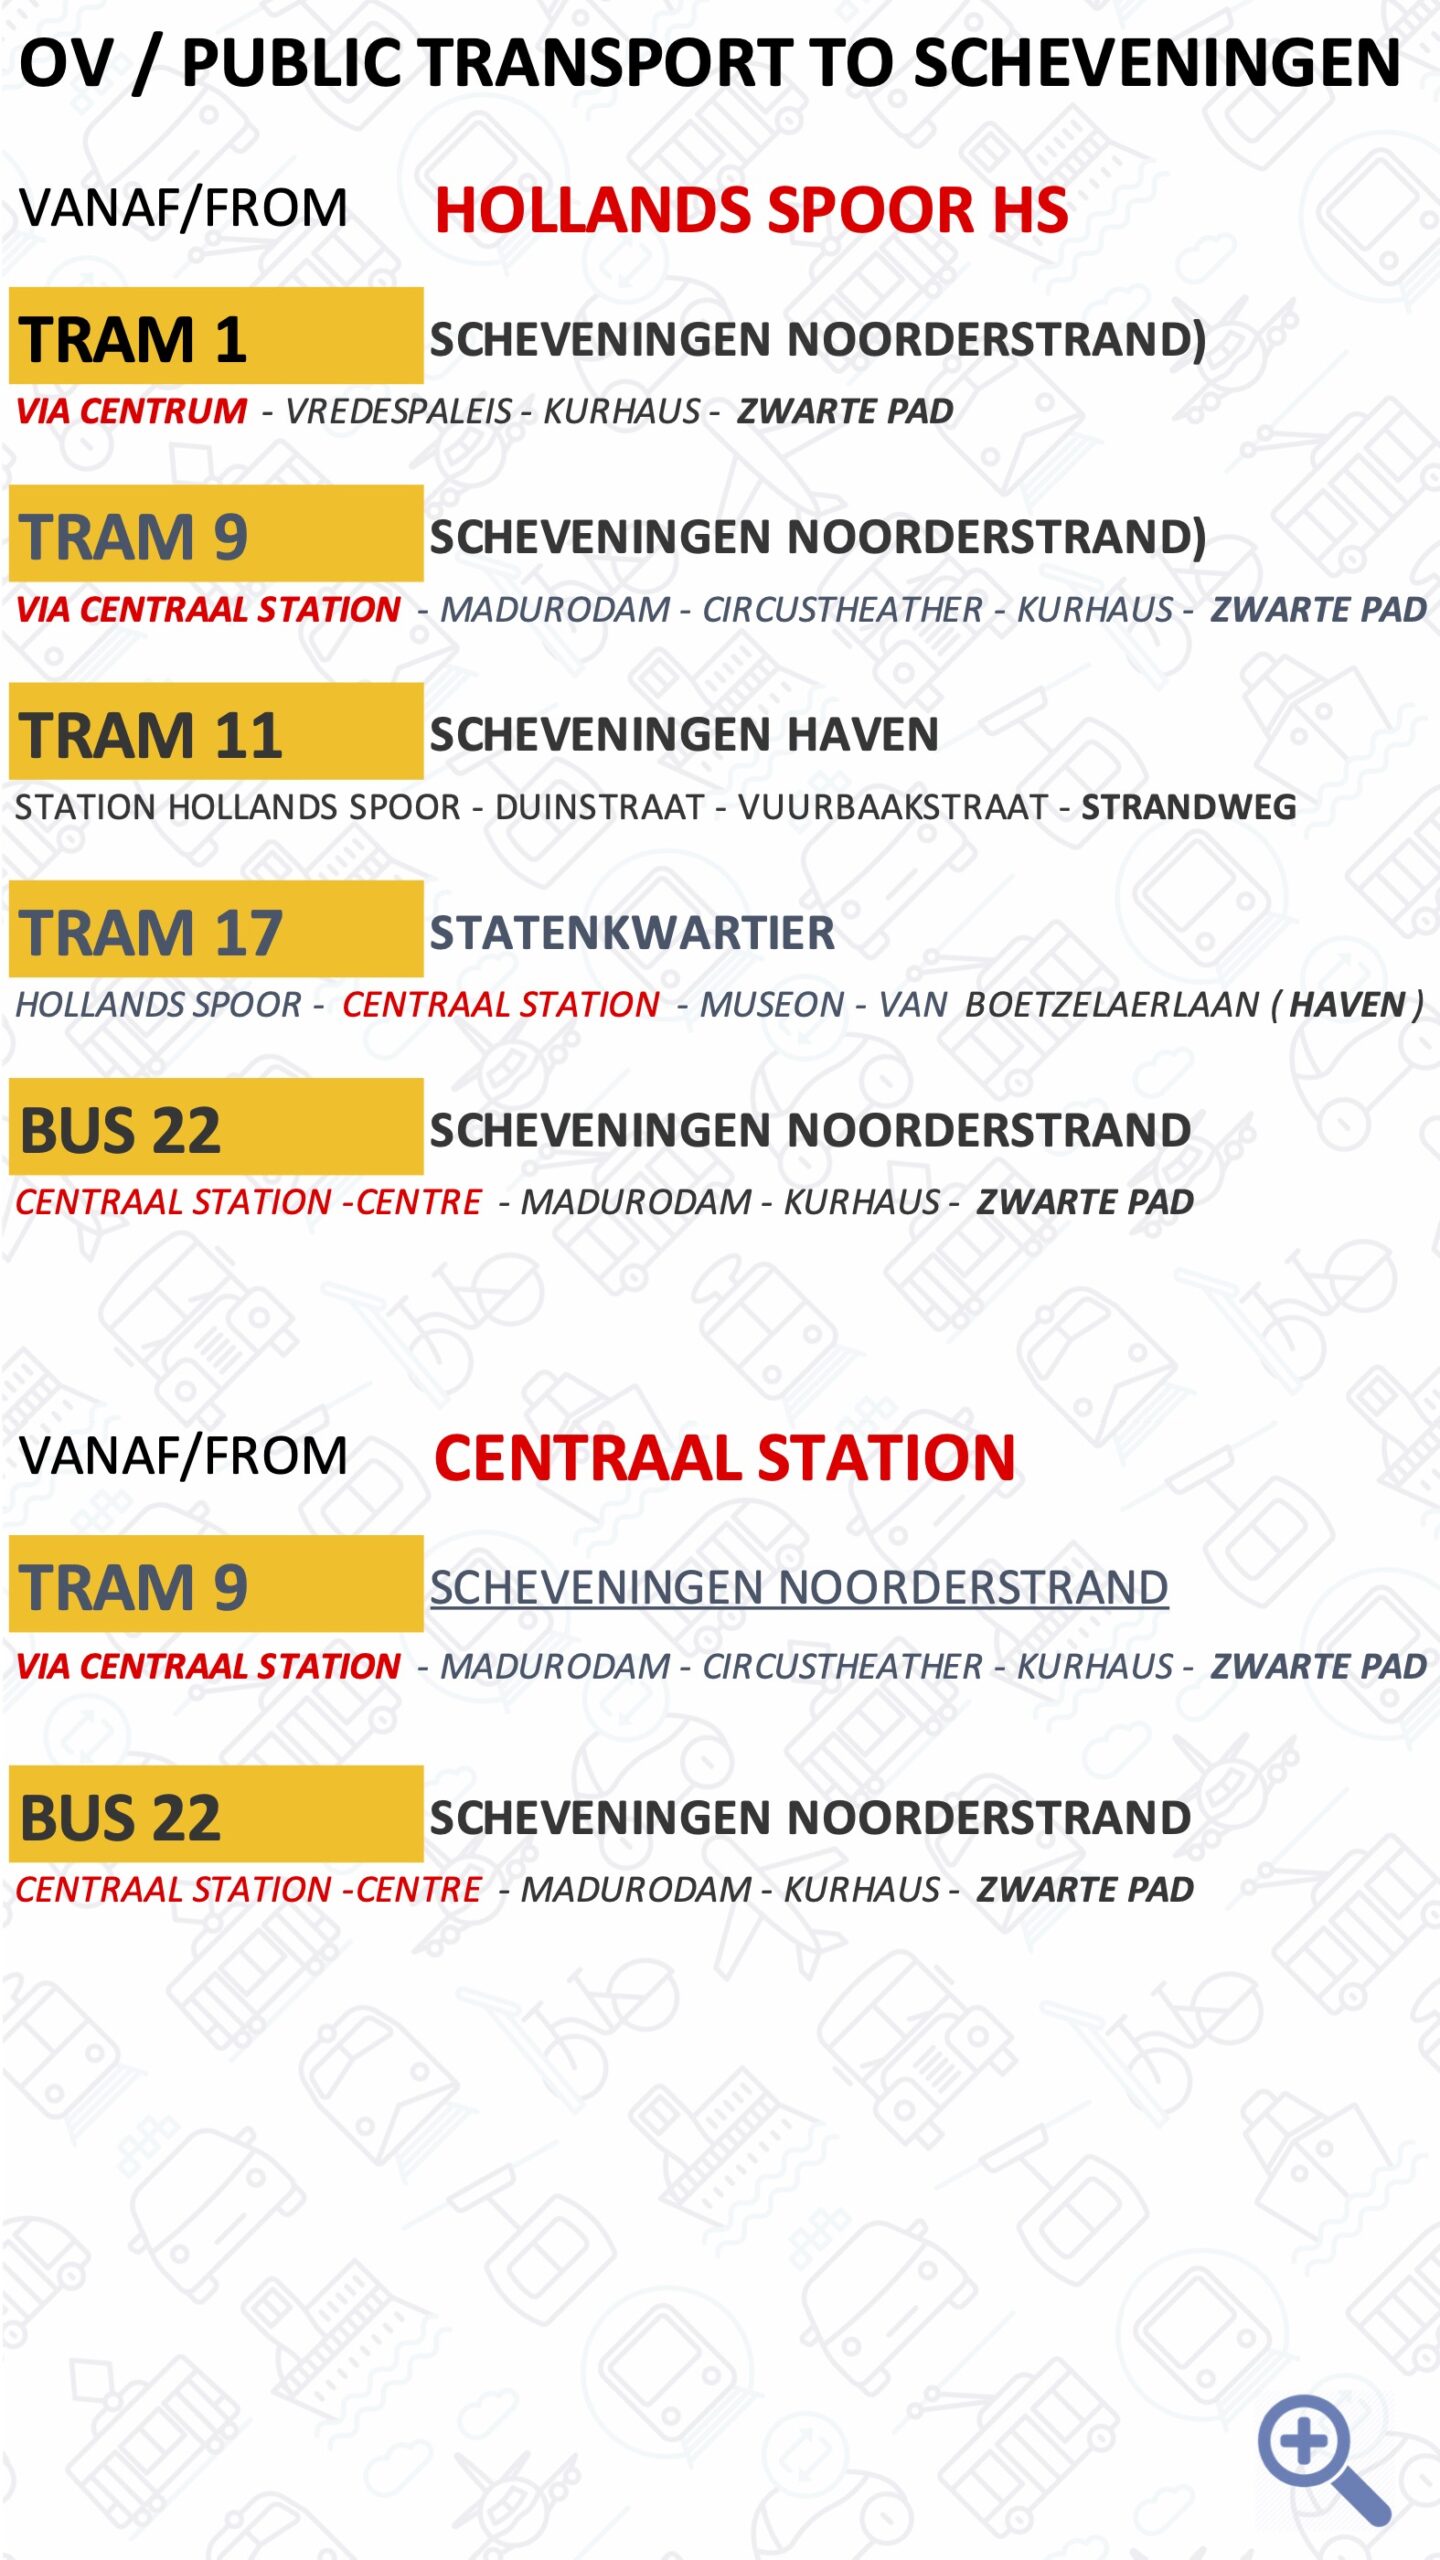 OV Public Transport to Scheveningen